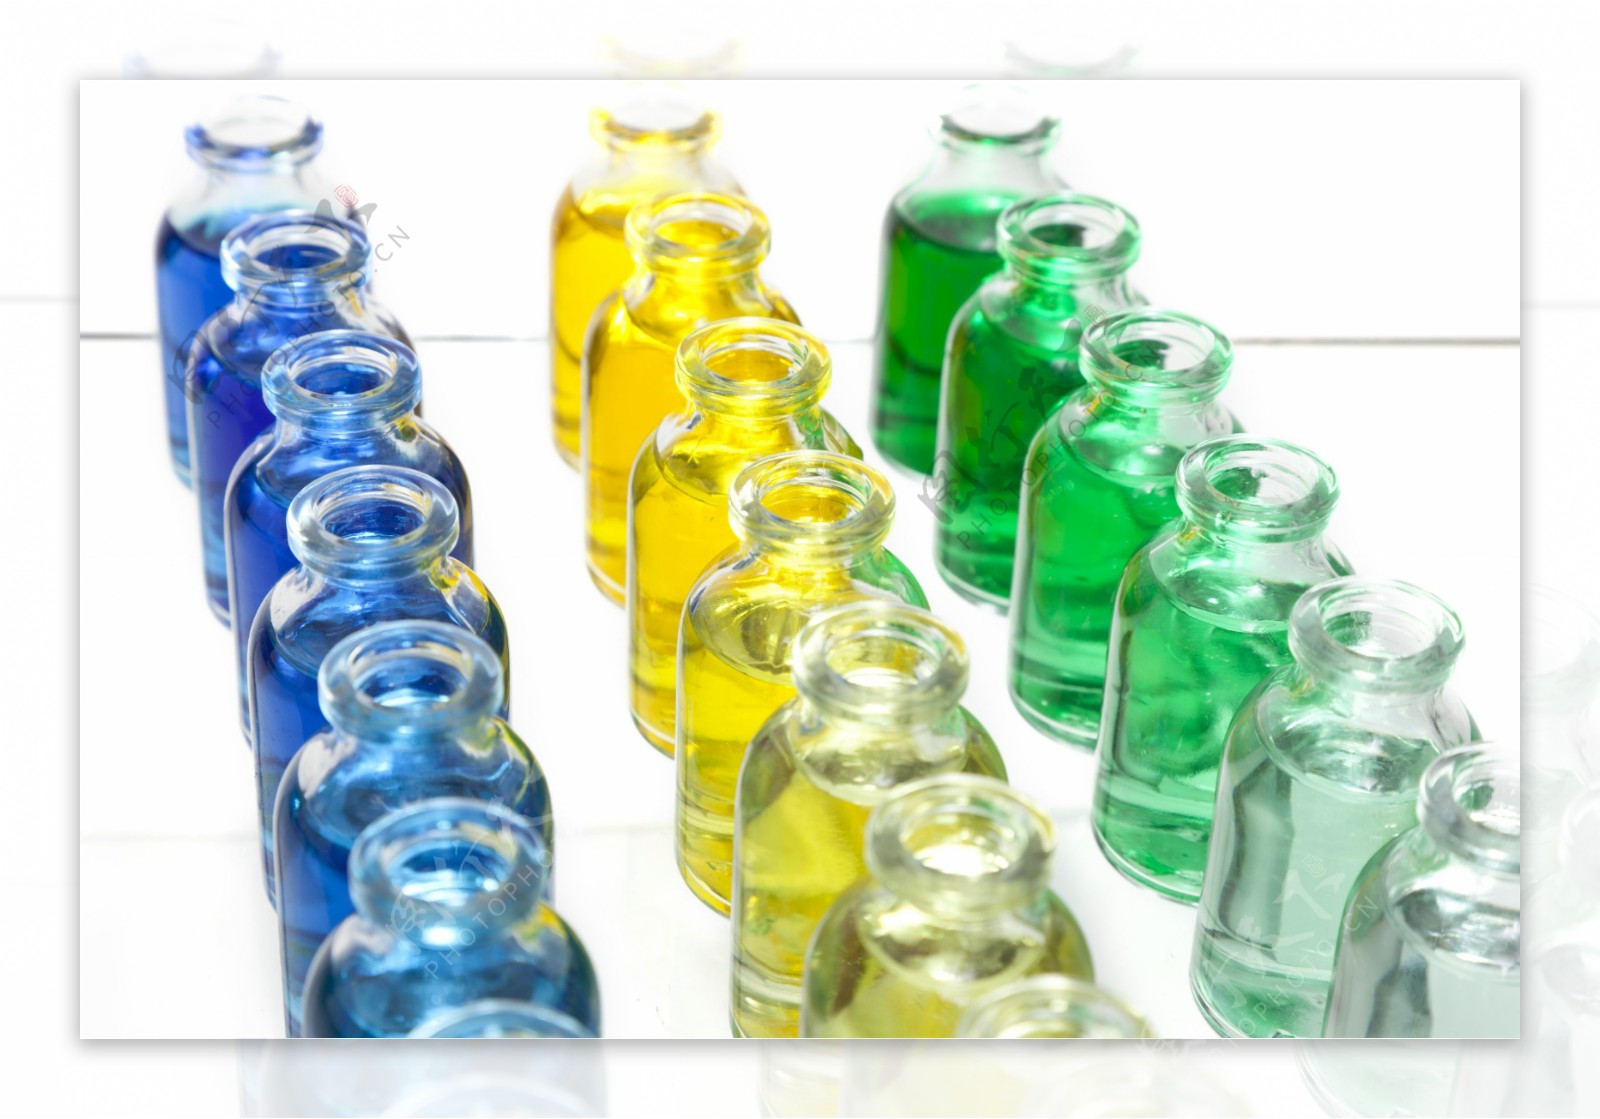 整齐的化学实验瓶体图片